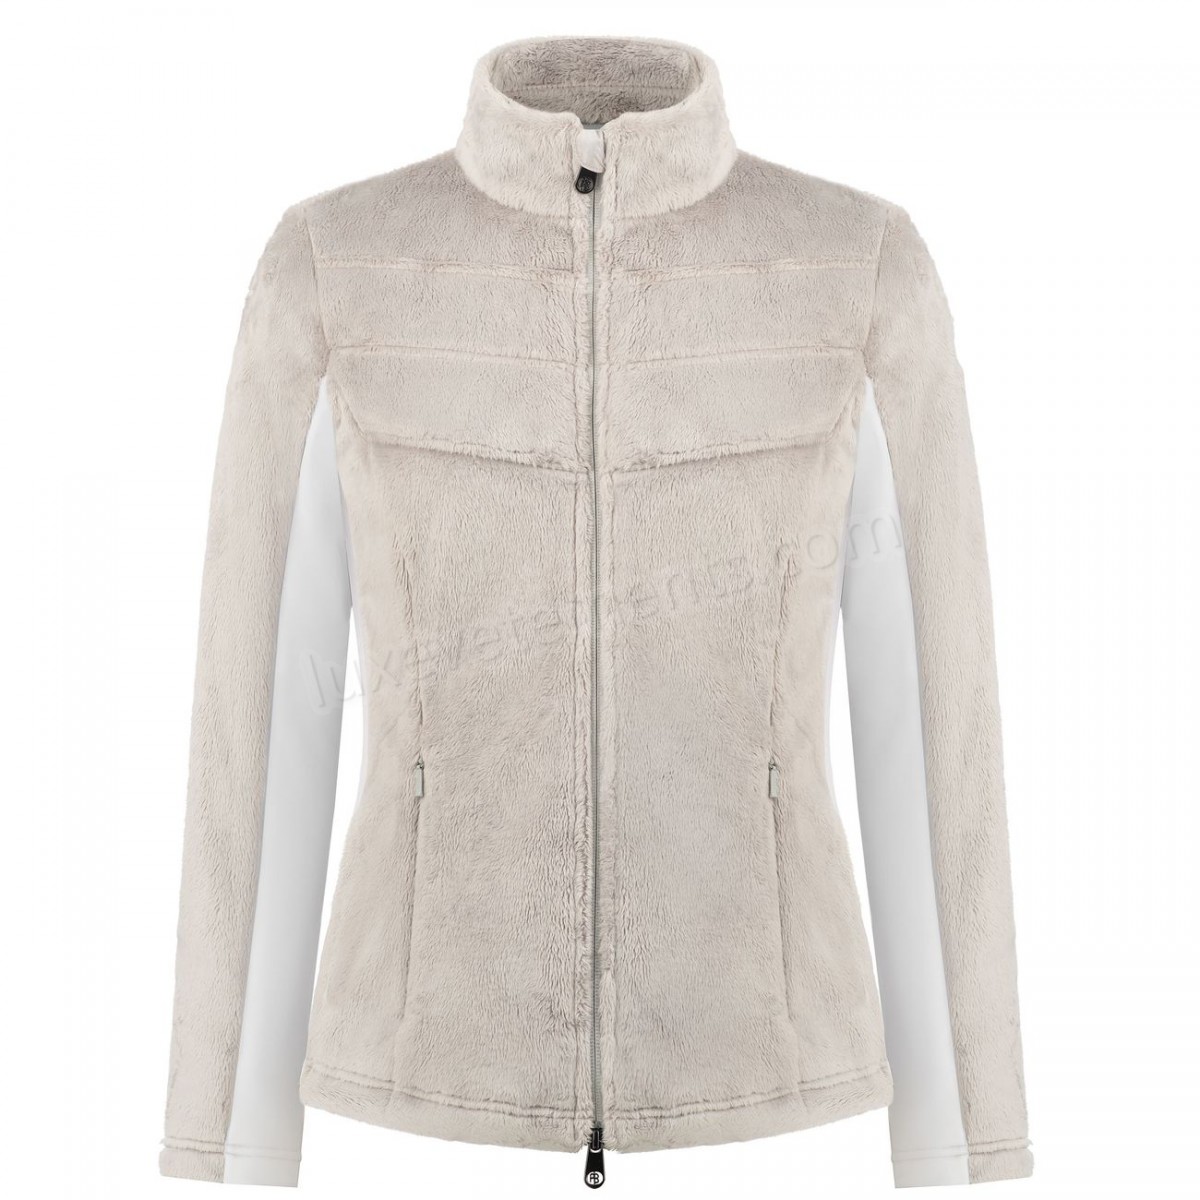 Poivre Blanc-Sports d'hiver femme POIVRE BLANC Polaire Poivre Blanc Long Pile Fleece Jacket 1603 Mineral Grey/white Femme Vente en ligne - -0